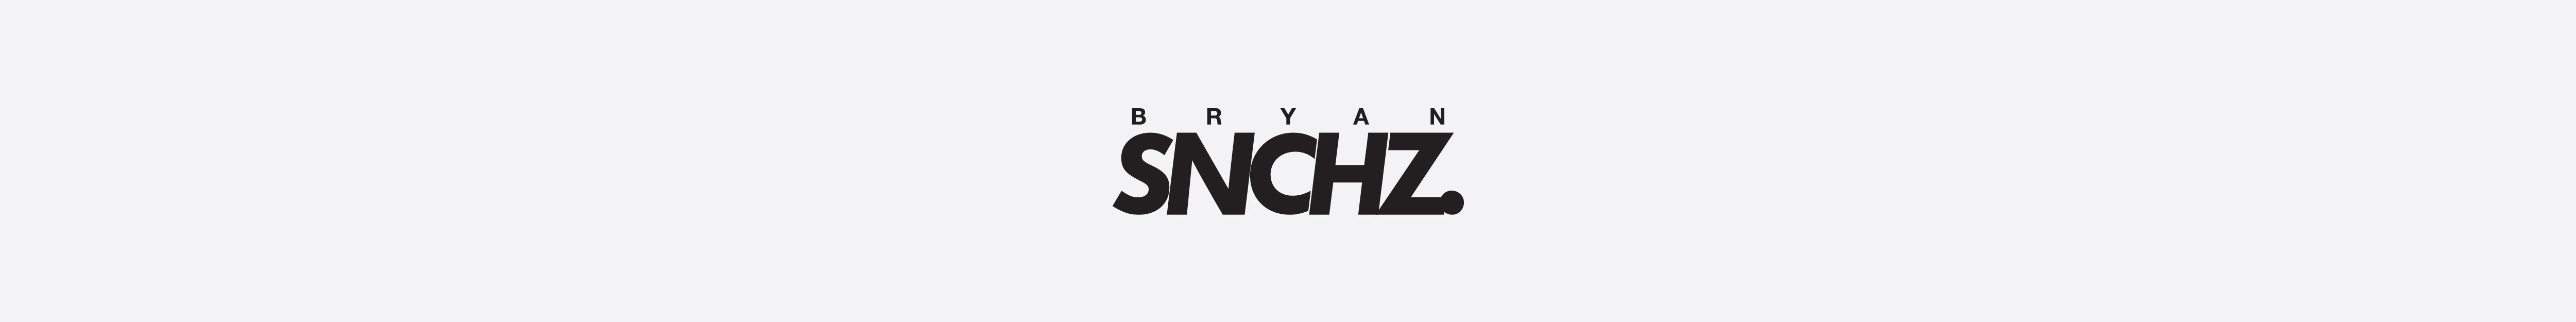 BRYAN SANCHEZ's profile banner